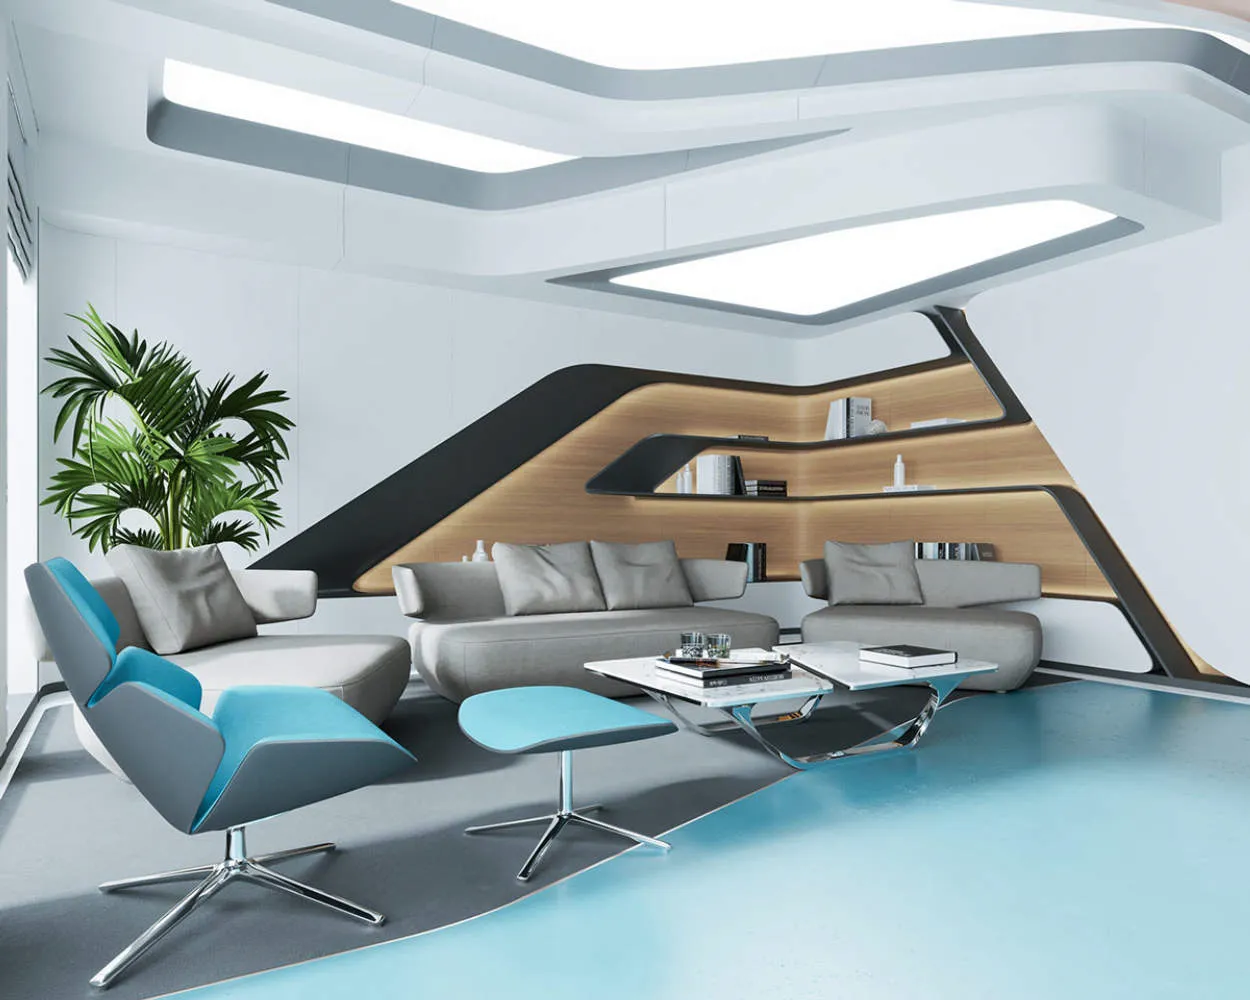 Futuristic Home Decor: Living in the Future